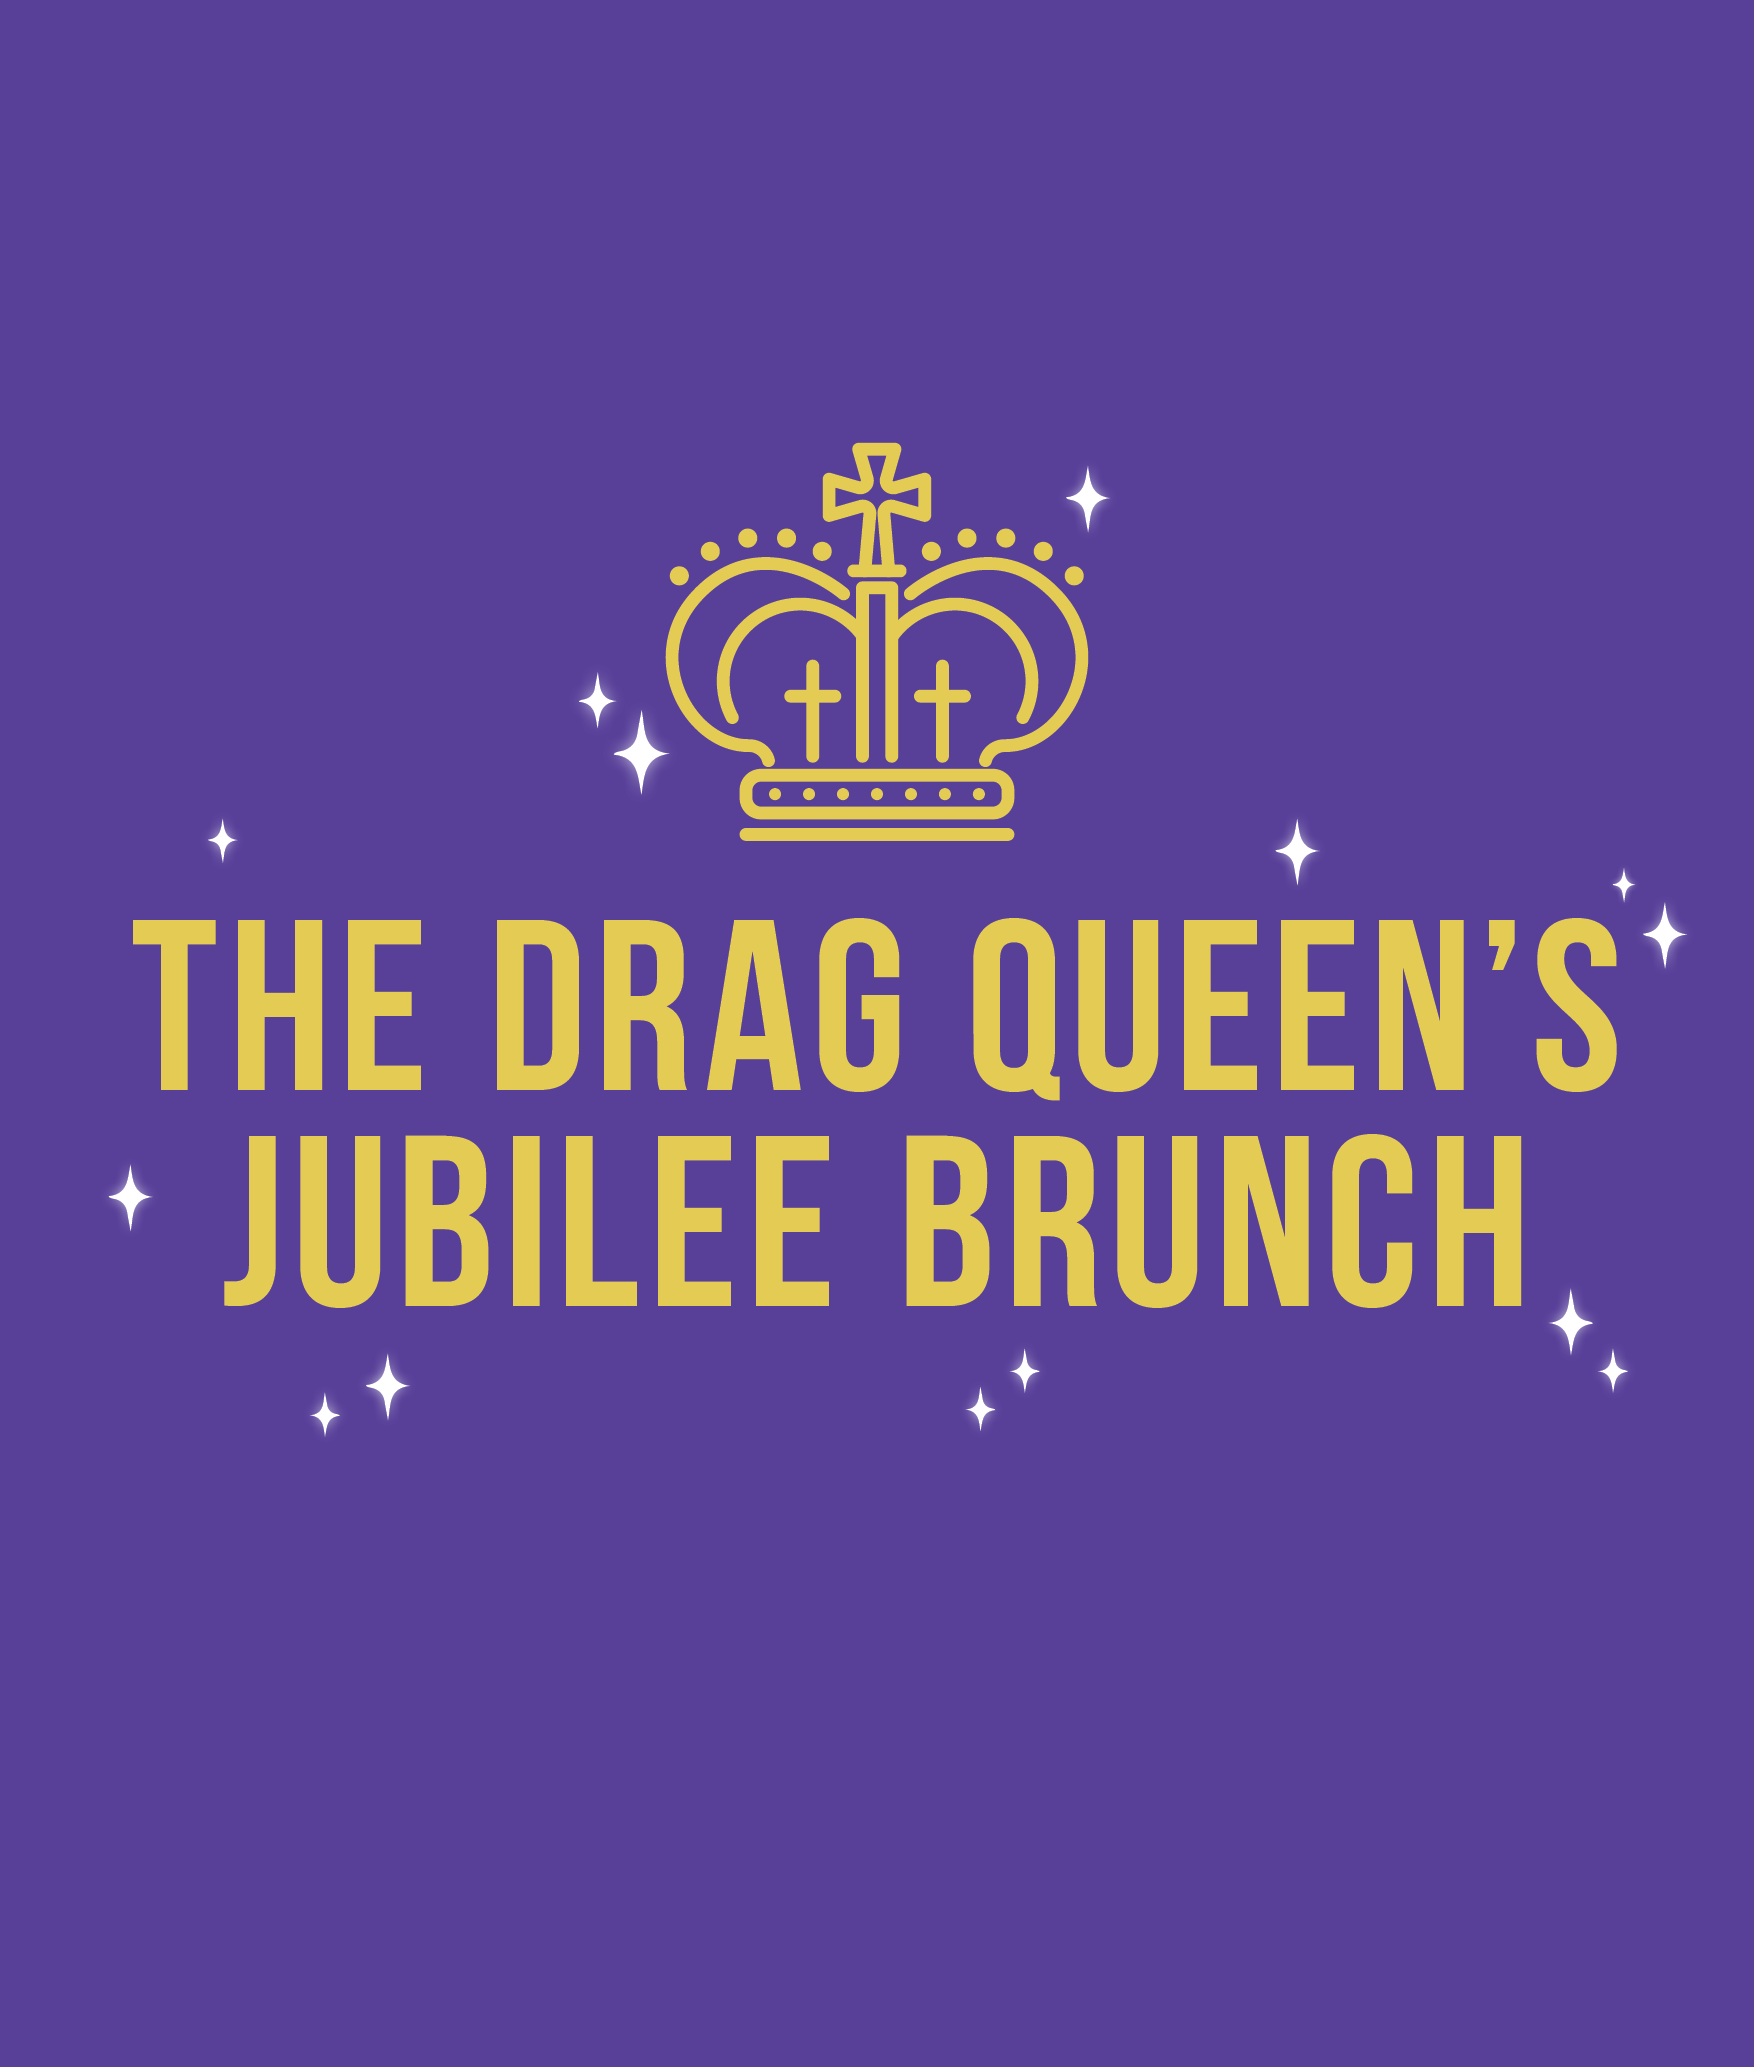 The Drag Queen's Jubilee Brunch